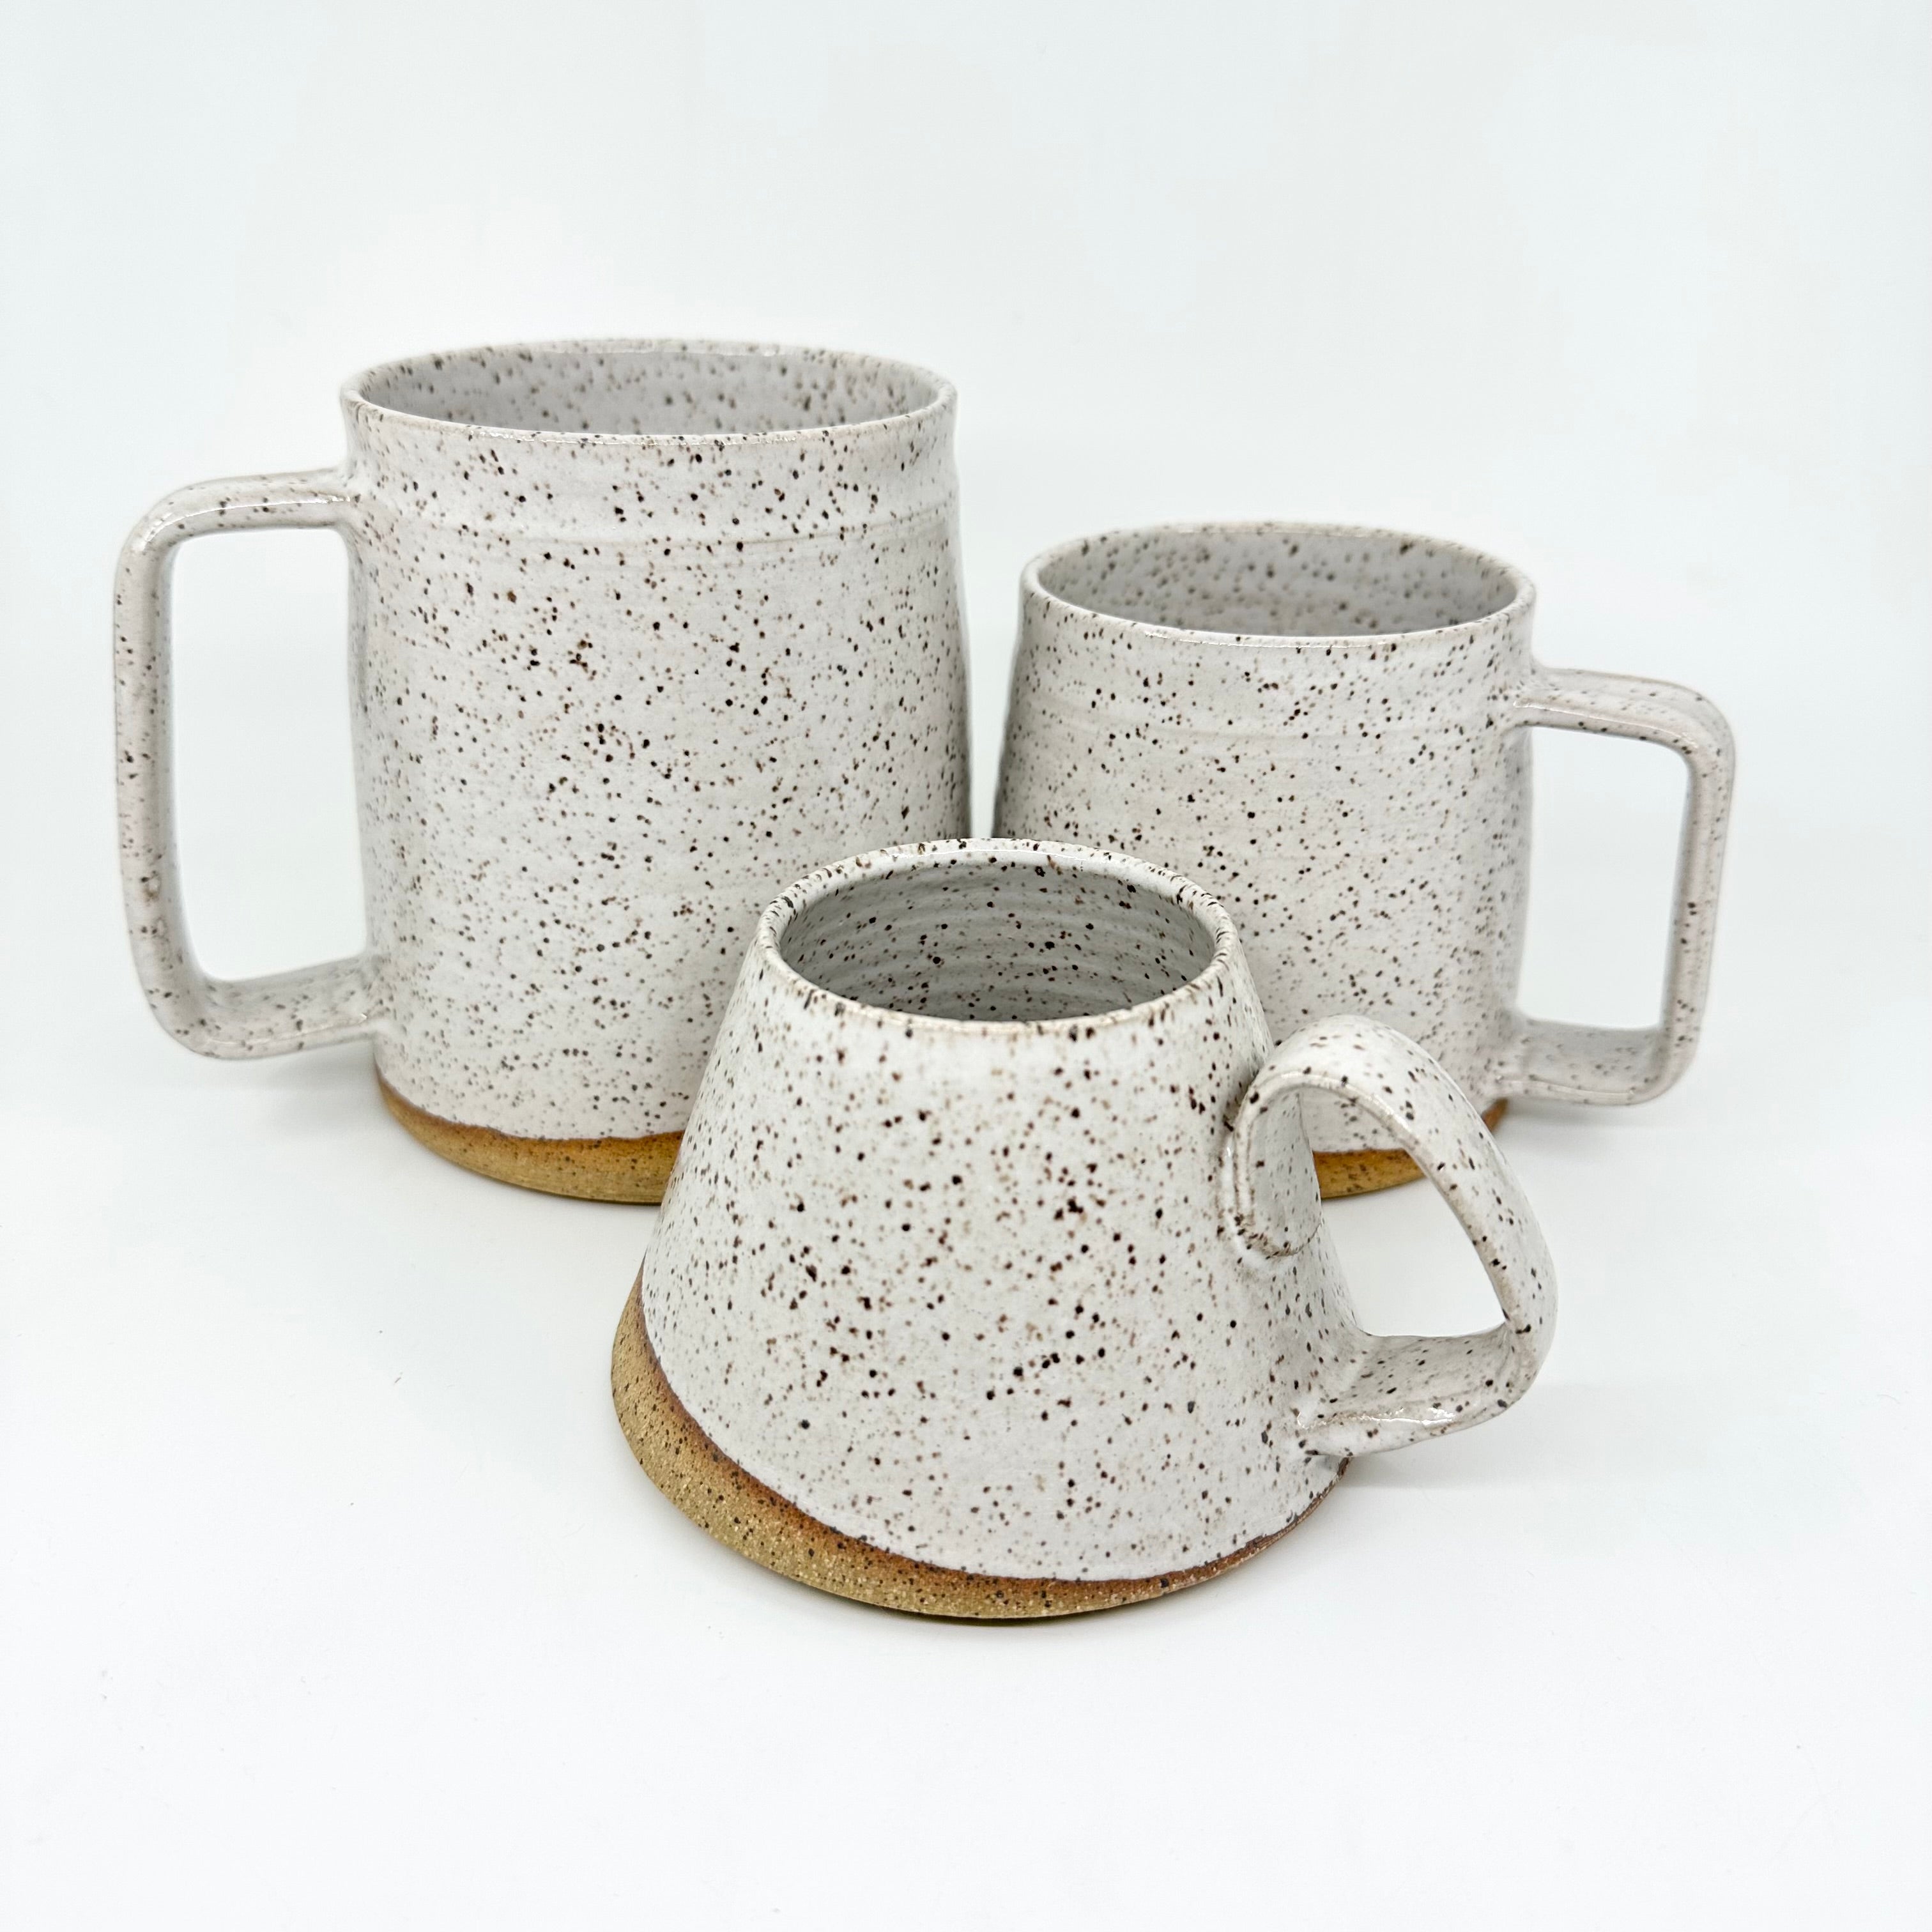 Barrel Mug - Speckled White